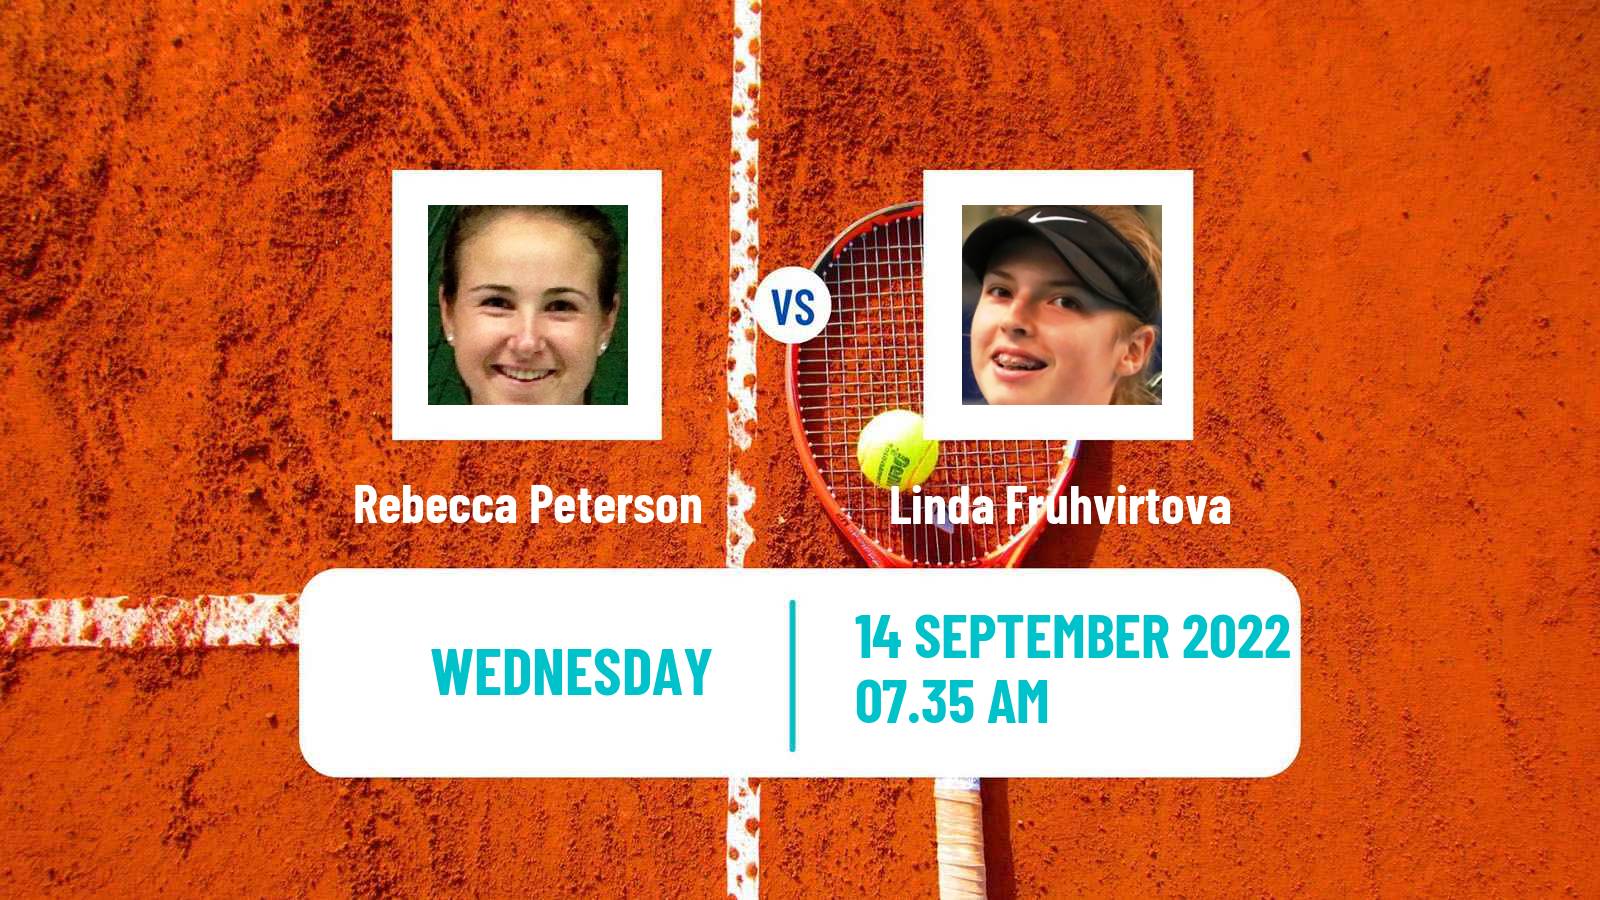 Tennis WTA Chennai Rebecca Peterson - Linda Fruhvirtova